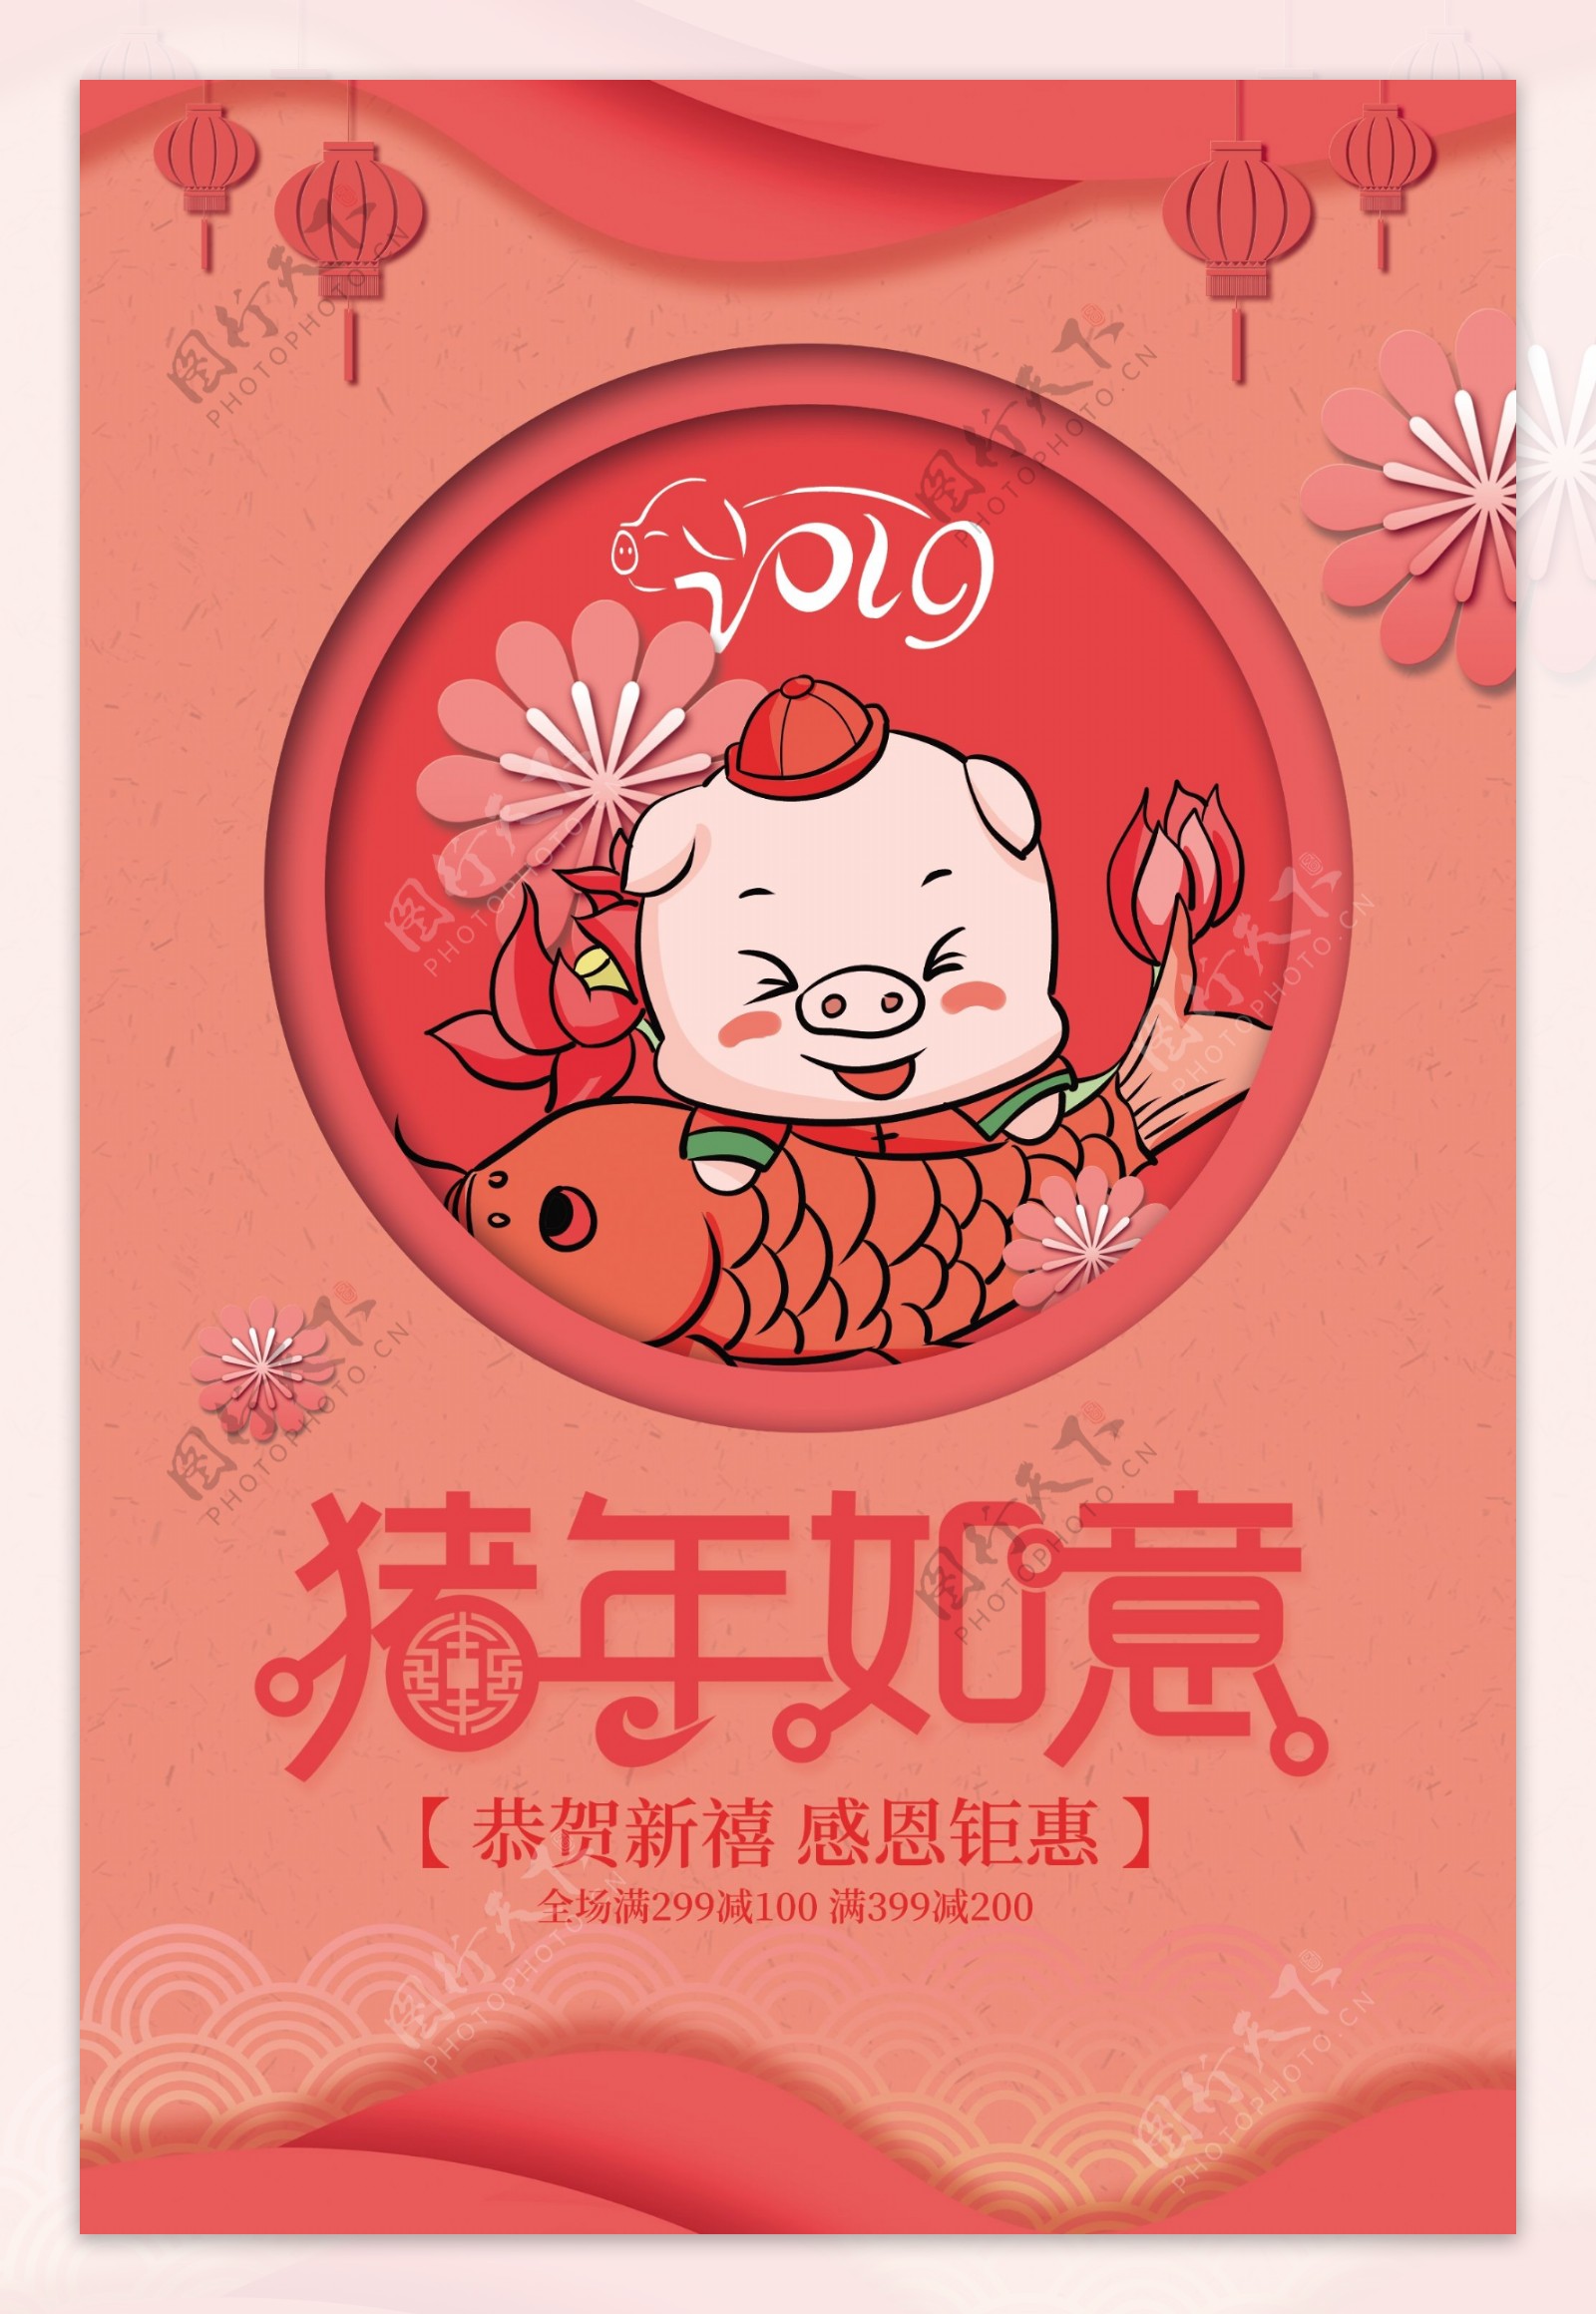 2019新年快乐猪年如意海报